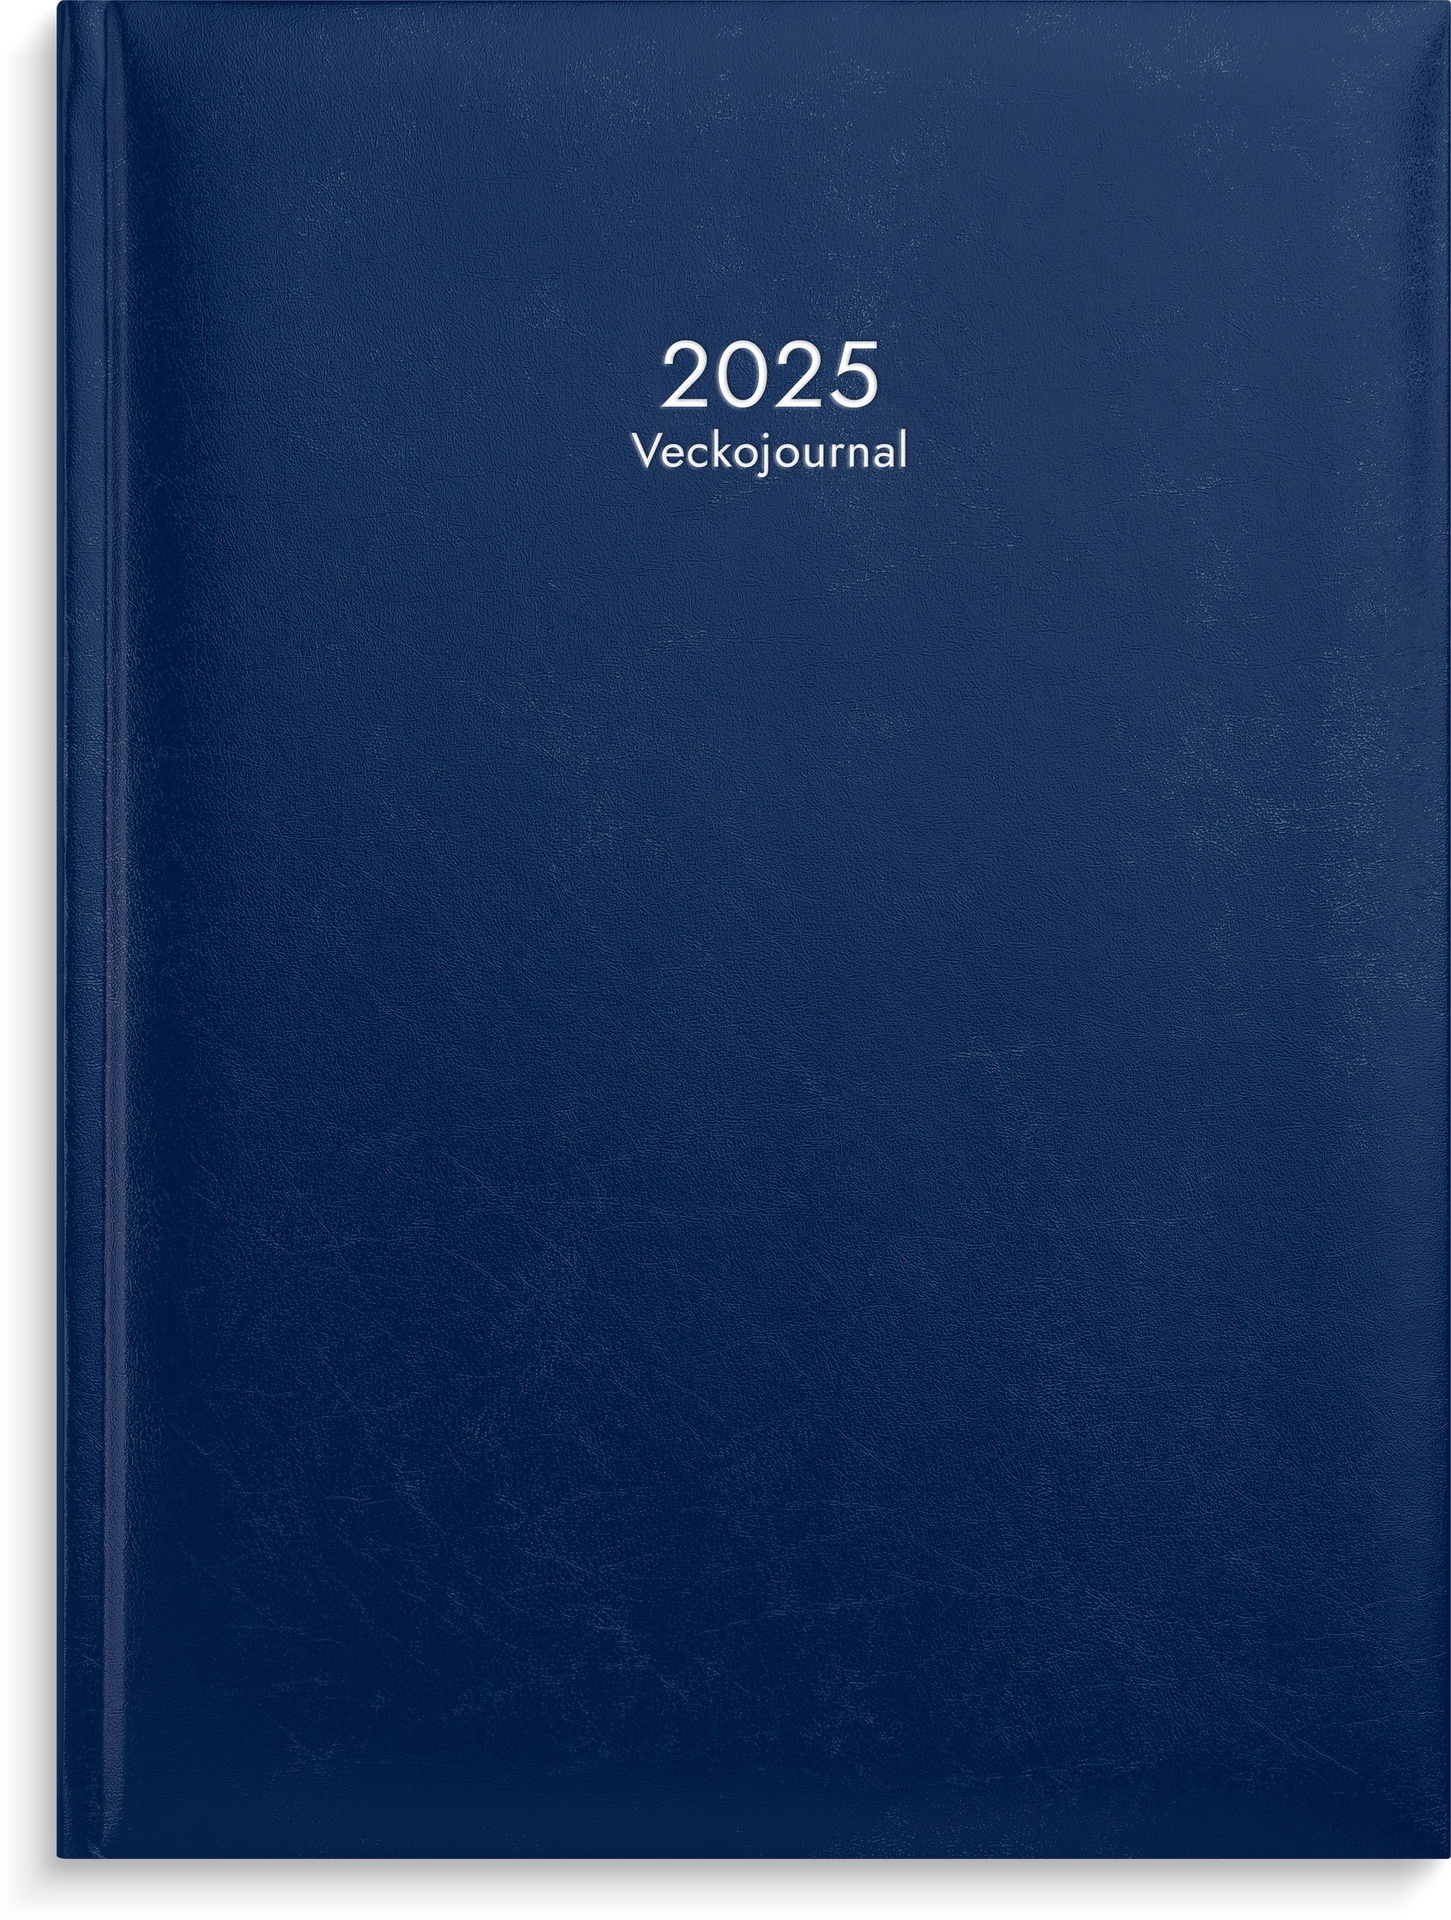 [61111025] Veckojournal blått  2025